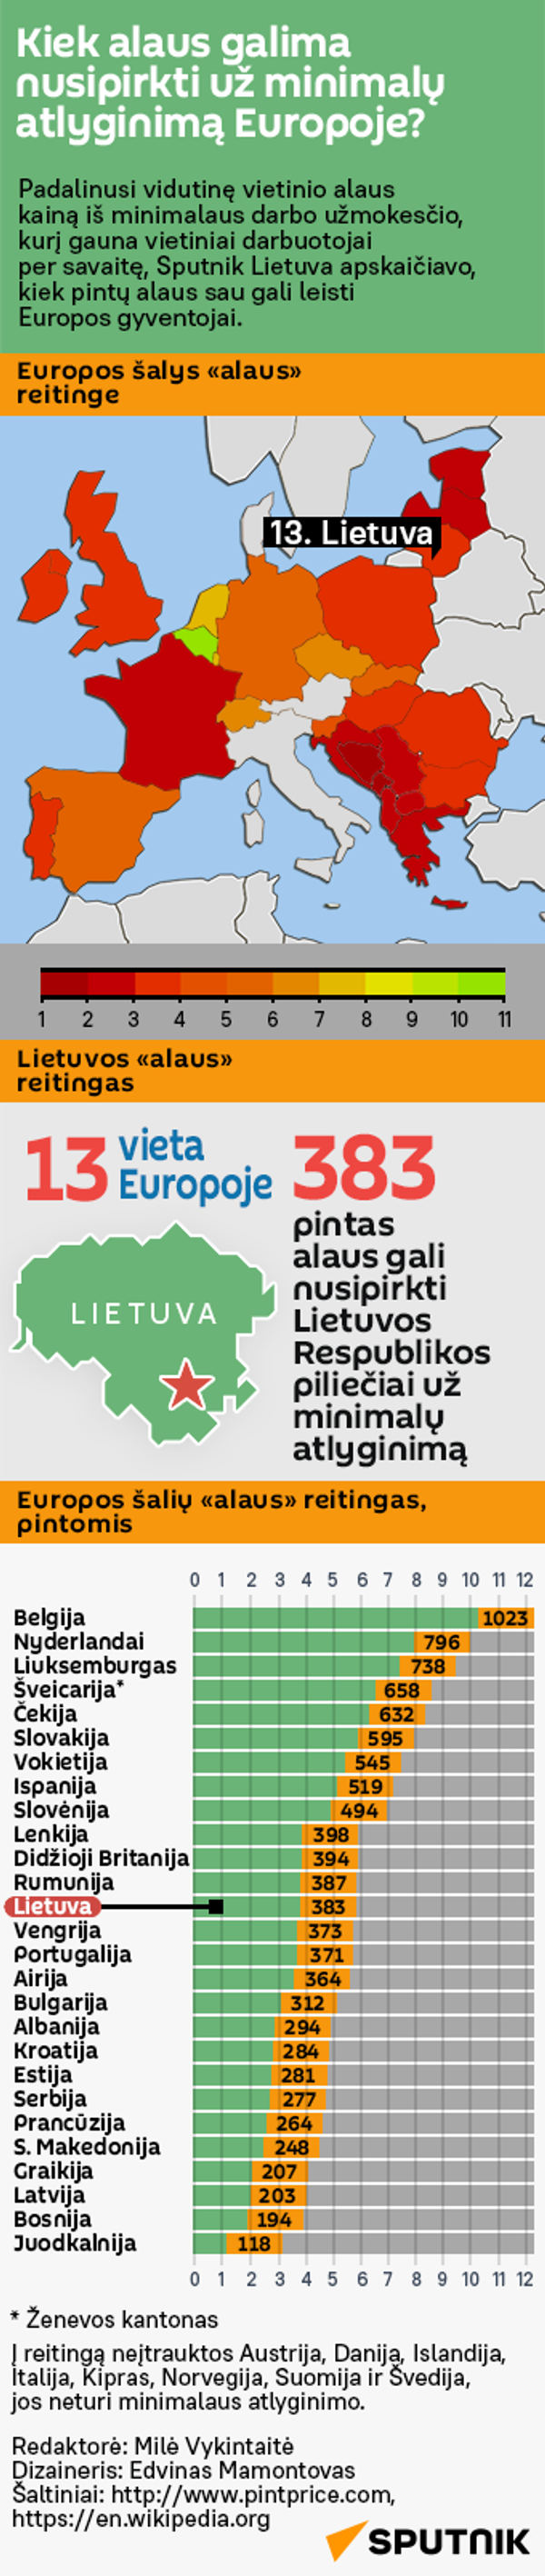 Kiek alaus galima nusipirkti už minimalų atlyginimą Europoje? - Sputnik Литва